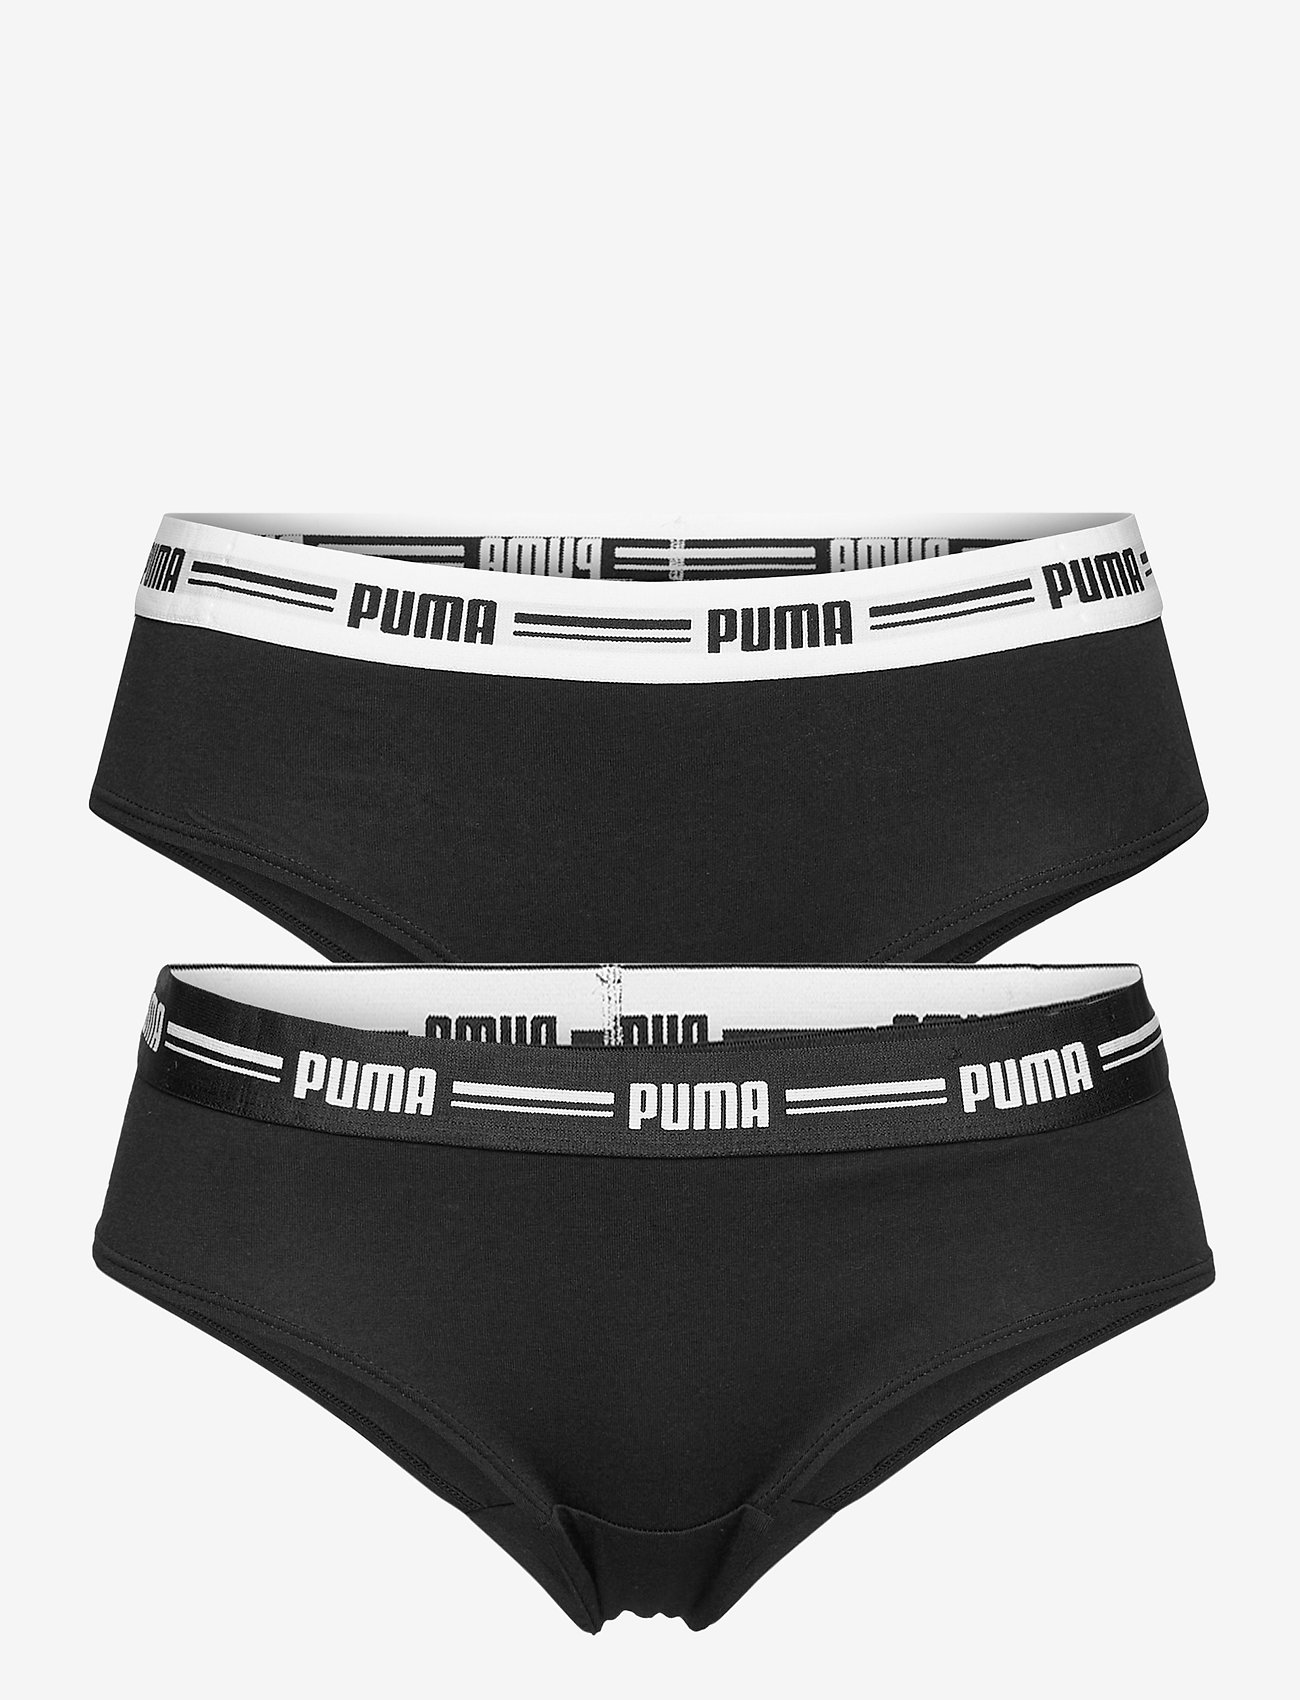 PUMA Puma Women Brazilian 2p Hang - Brazilian panties | Boozt.com